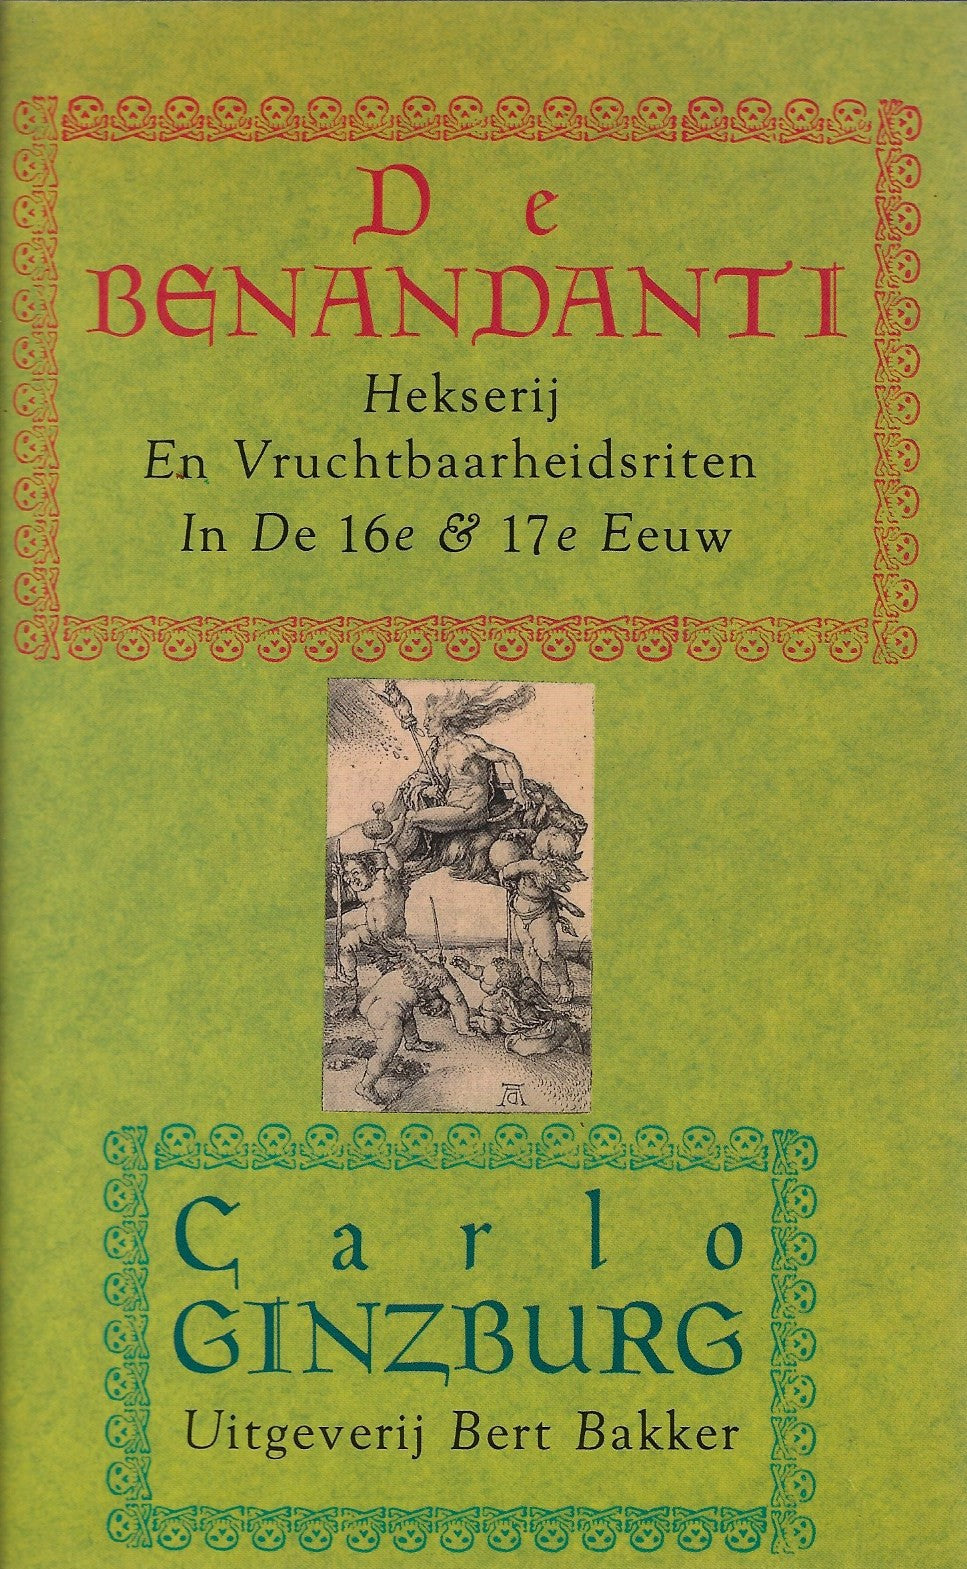 De Benandanti / Hekserij en vruchtbaarheidsriten in de 16e en 17e eeuw